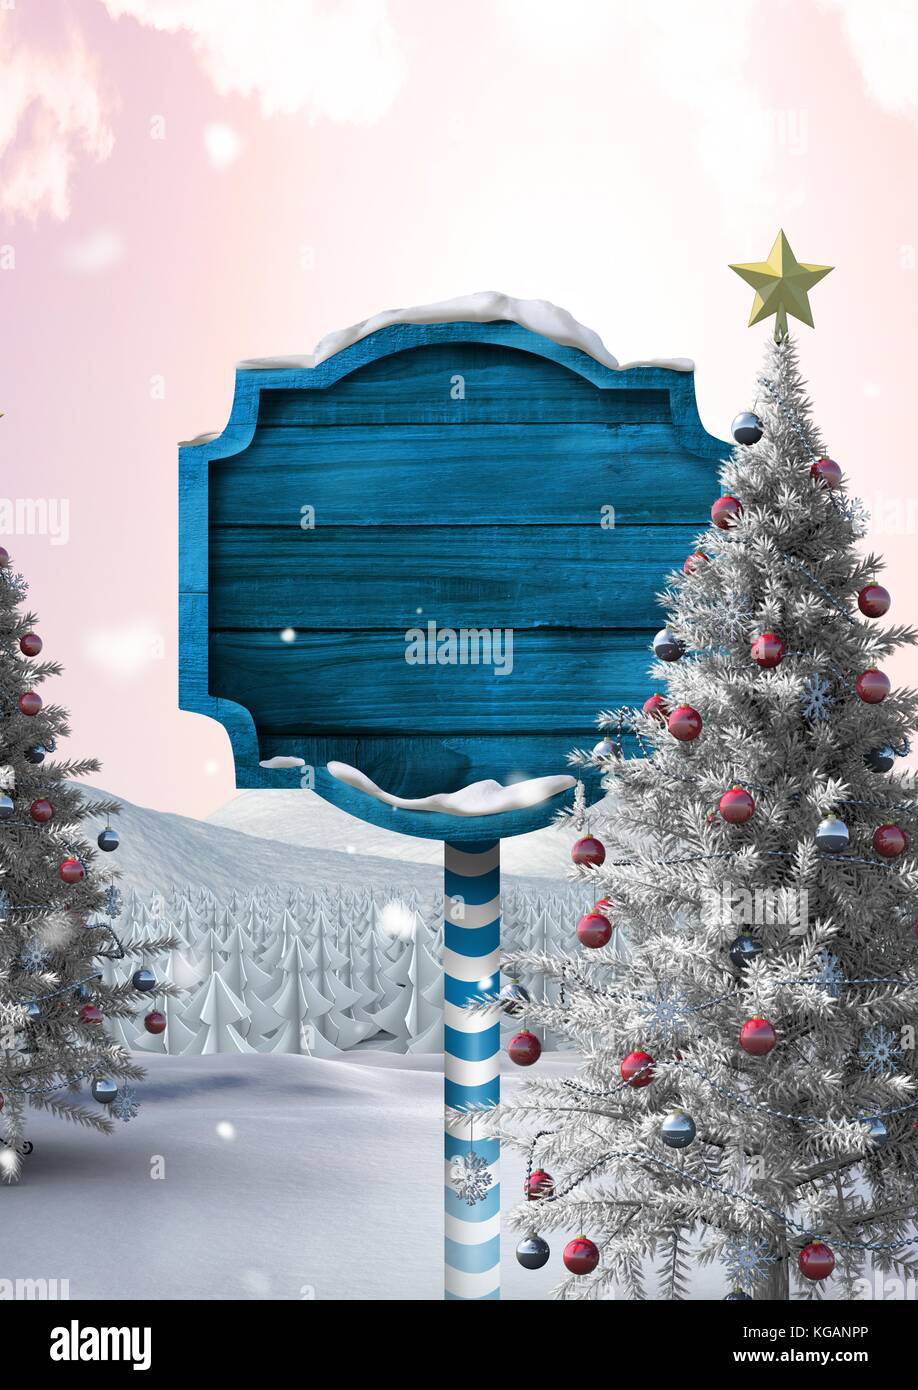 Composito Digitale del cartello in legno in Natale paesaggio invernale con albero di Natale Foto Stock